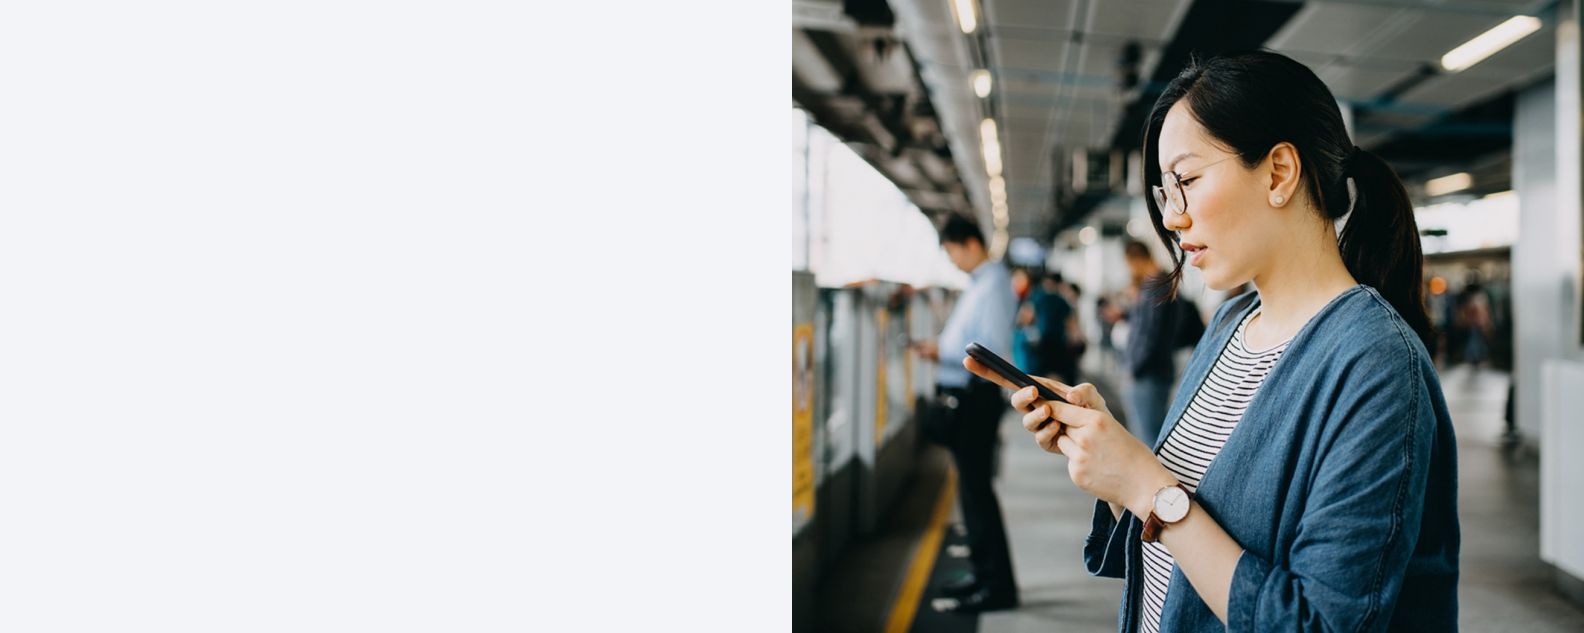 Mujer joven usando un teléfono móvil en la plataforma de la estación de metro